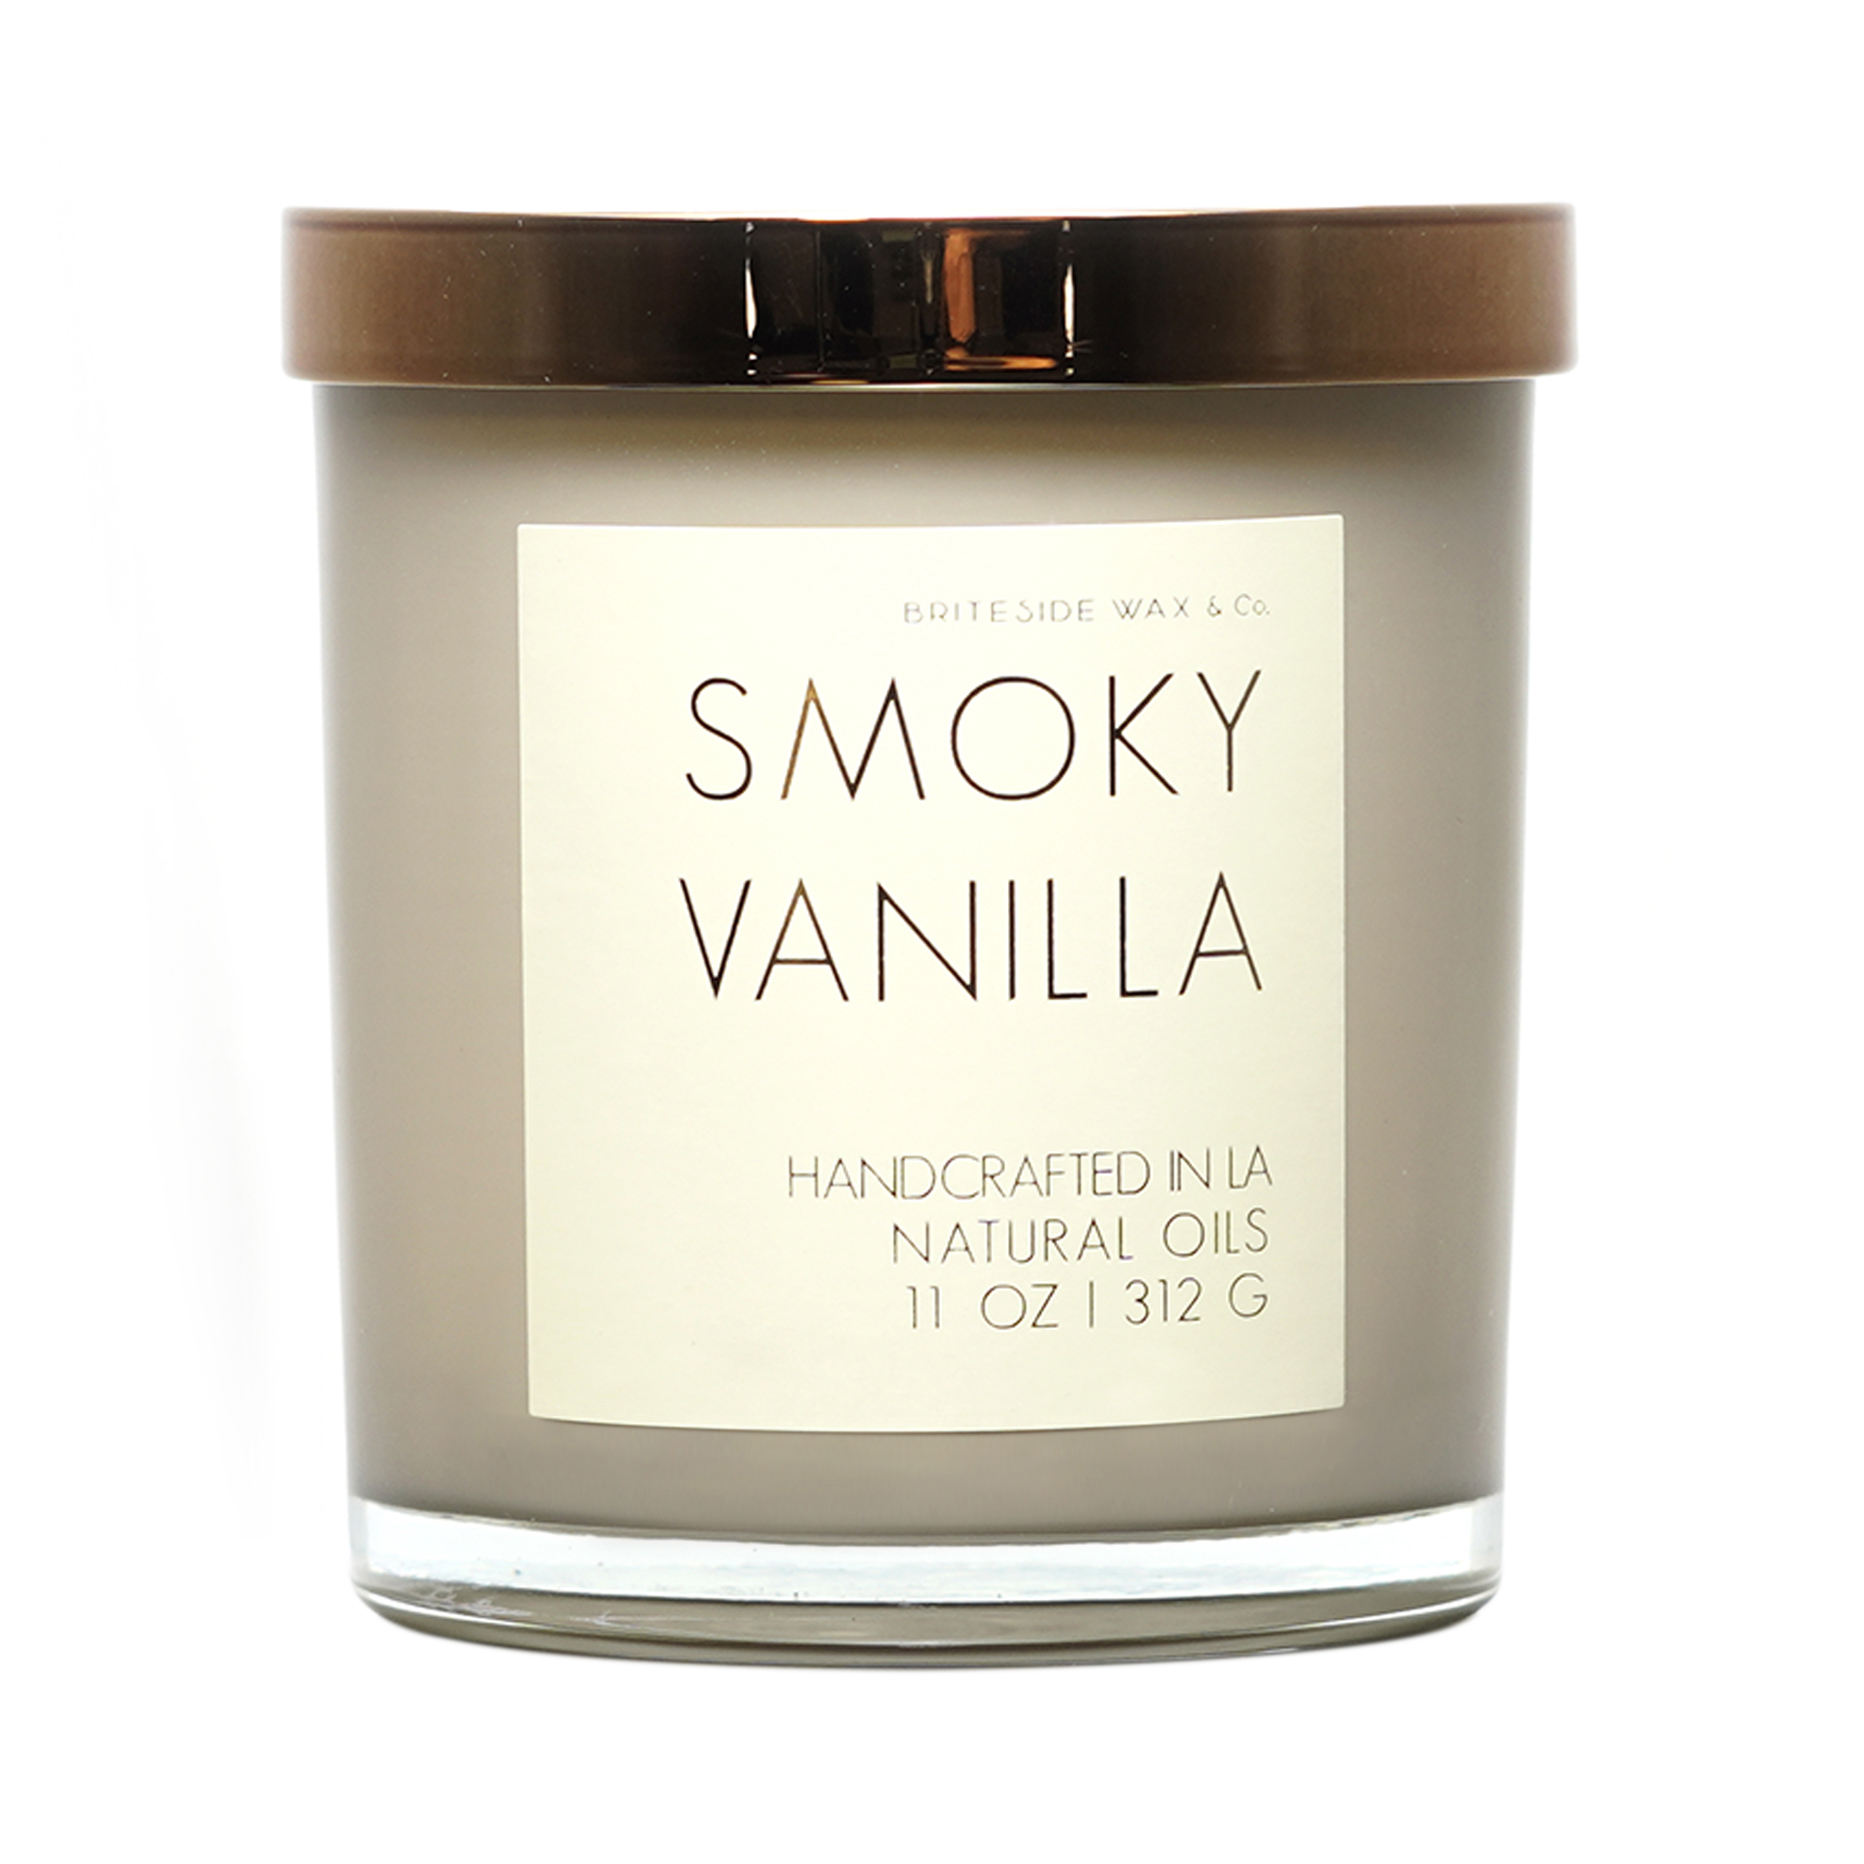 Smoky Vanilla